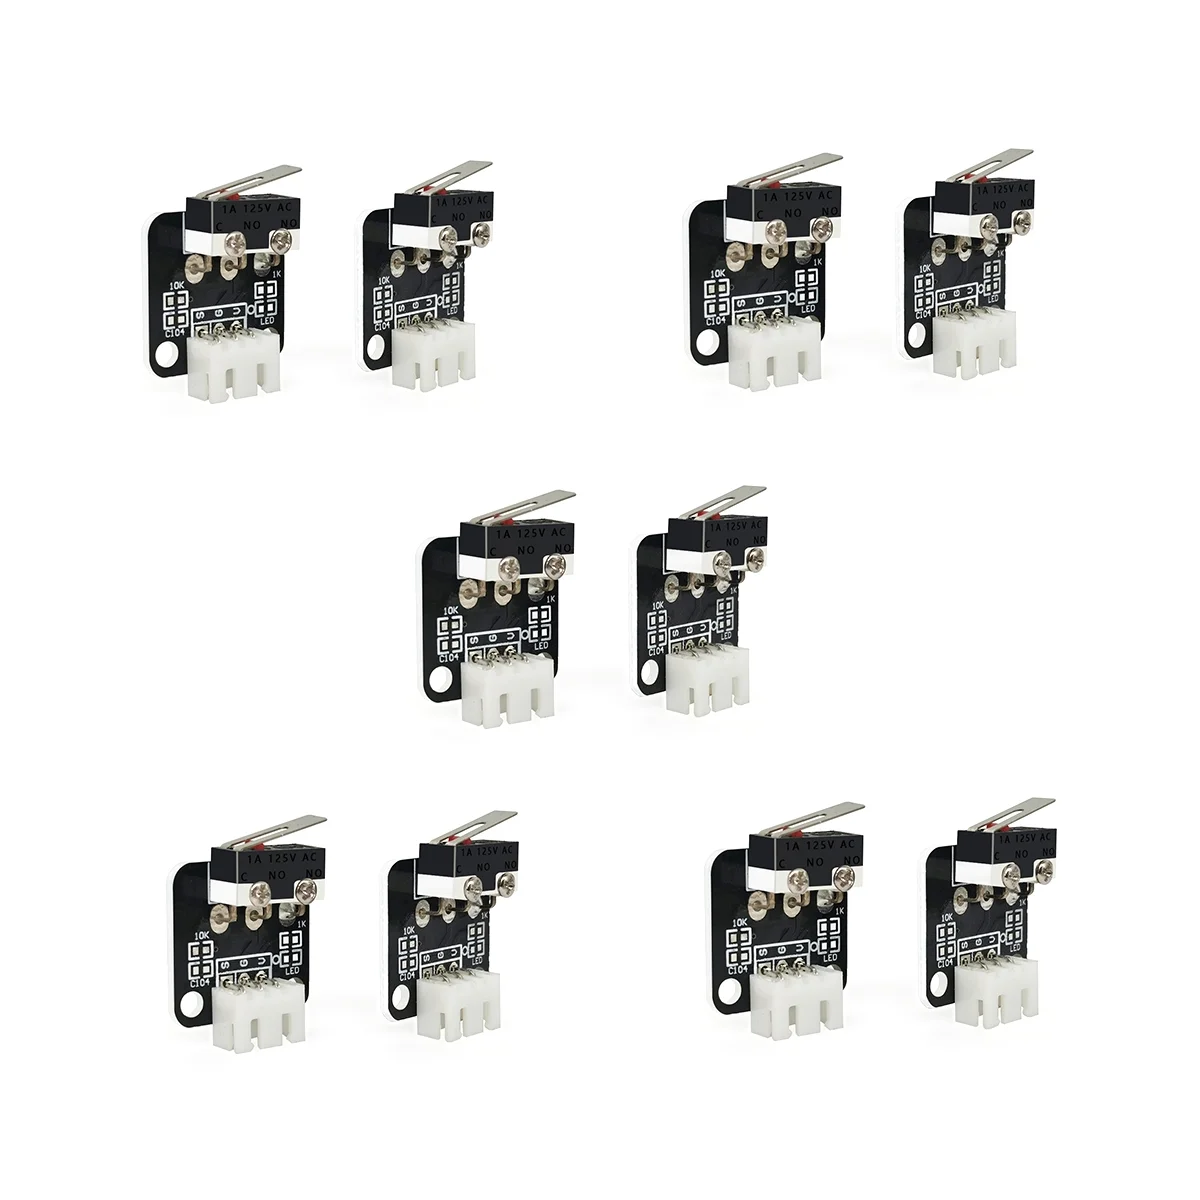 

10 Pcs 3D Printer Part End Stop Limit Switch 3 Pin Compatible with CNC RAMPS 1.4 RepRap 3D Printer for -10 10S,S4,S5